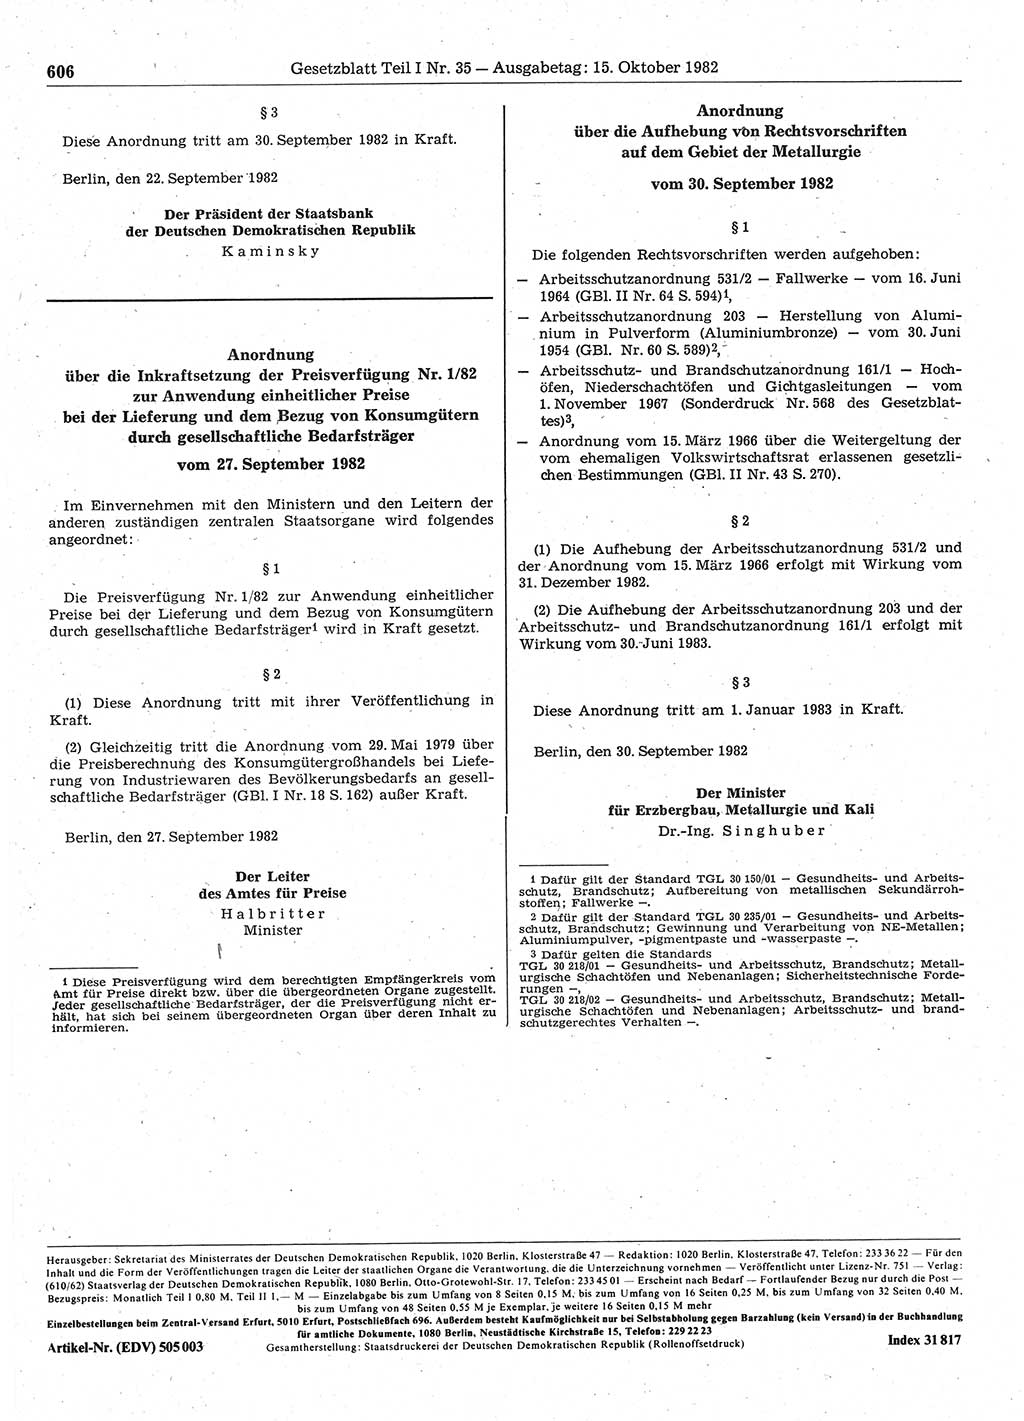 Gesetzblatt (GBl.) der Deutschen Demokratischen Republik (DDR) Teil Ⅰ 1982, Seite 606 (GBl. DDR Ⅰ 1982, S. 606)